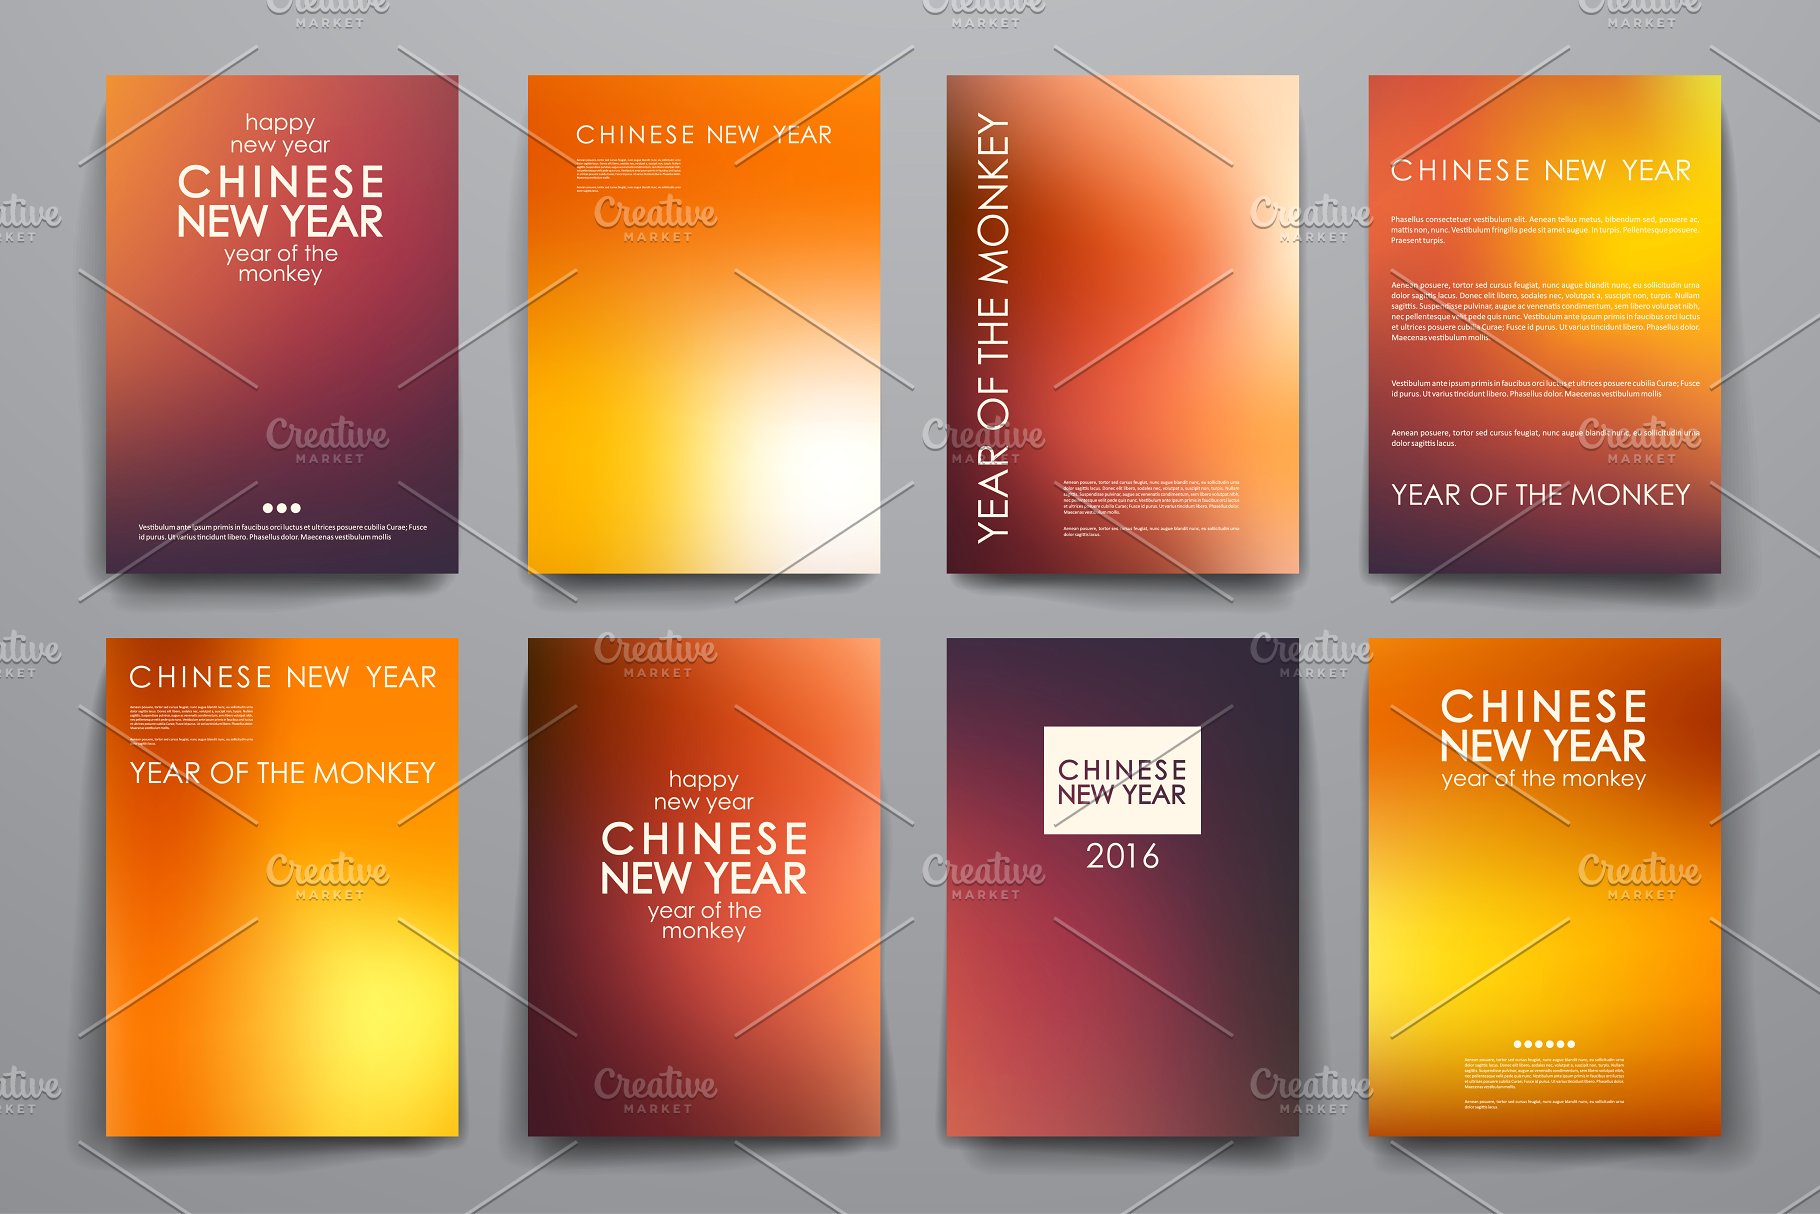 中国新年主题风小册子画册模板 Chinese New Year Brochures插图3